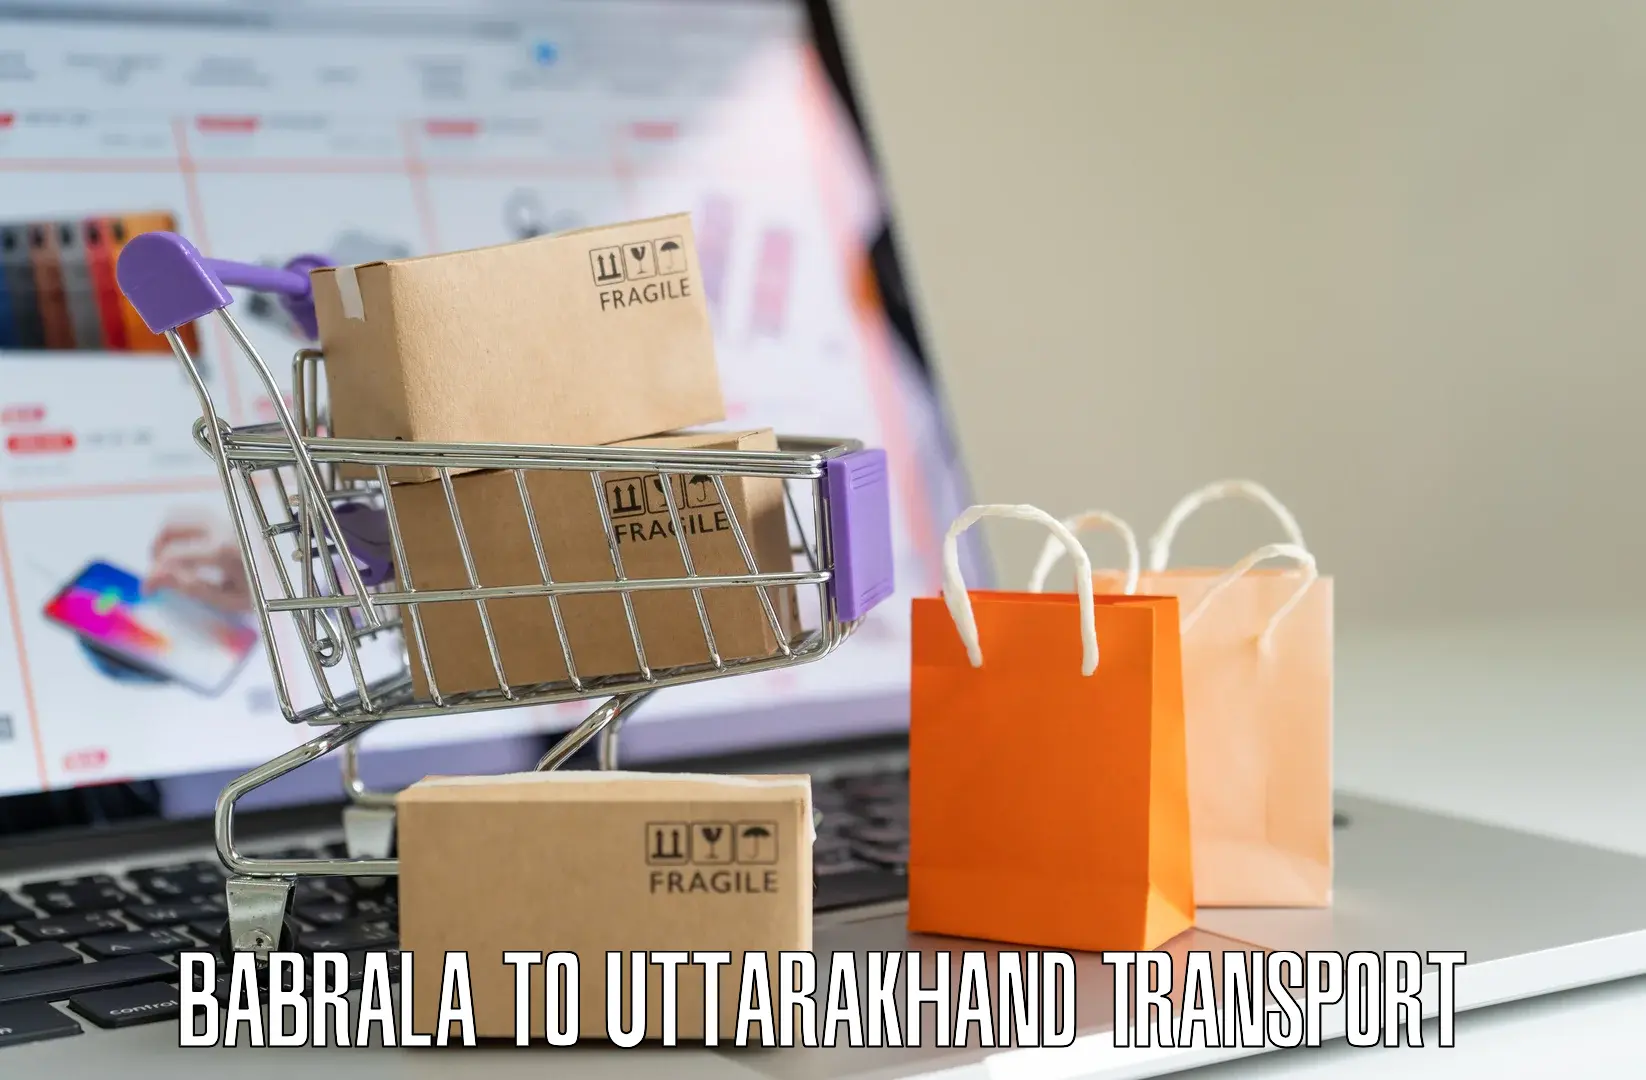 Commercial transport service Babrala to Uttarakhand